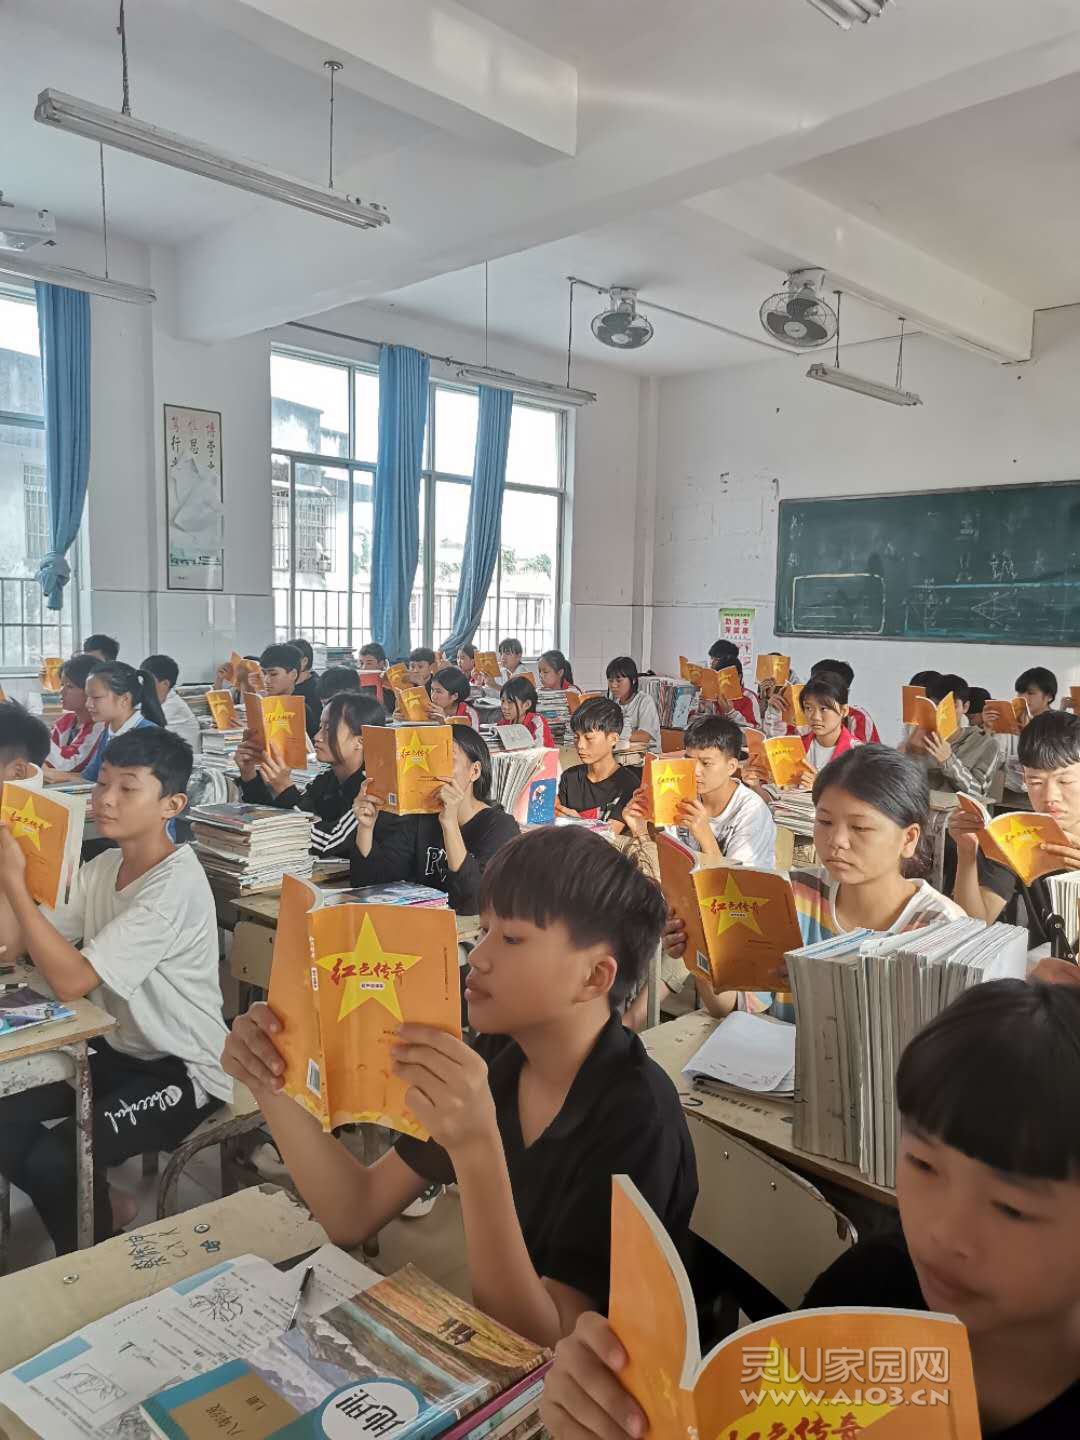 灵山县陆屋中学的同学们在认真的阅读《红色传奇》书籍。.jpg